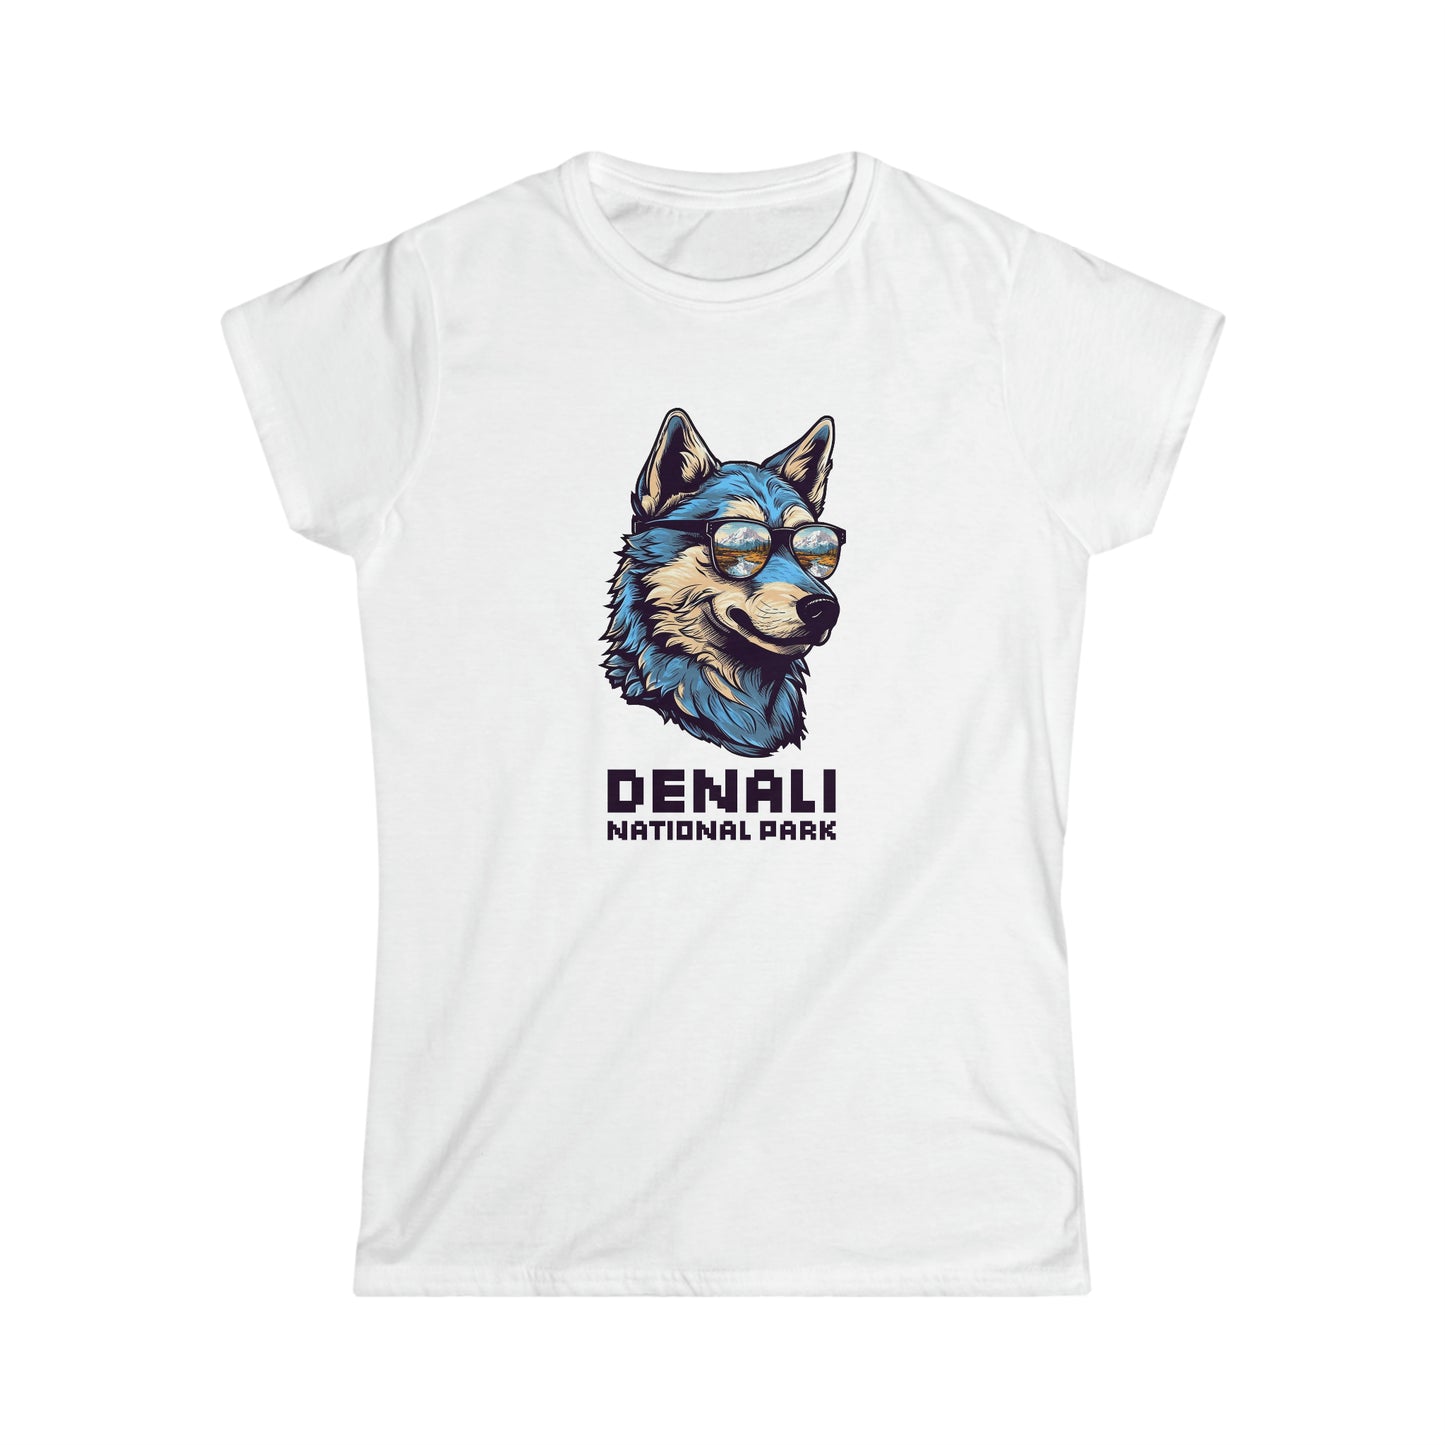 Denali National Park Women's T-Shirt - Cool Wolf